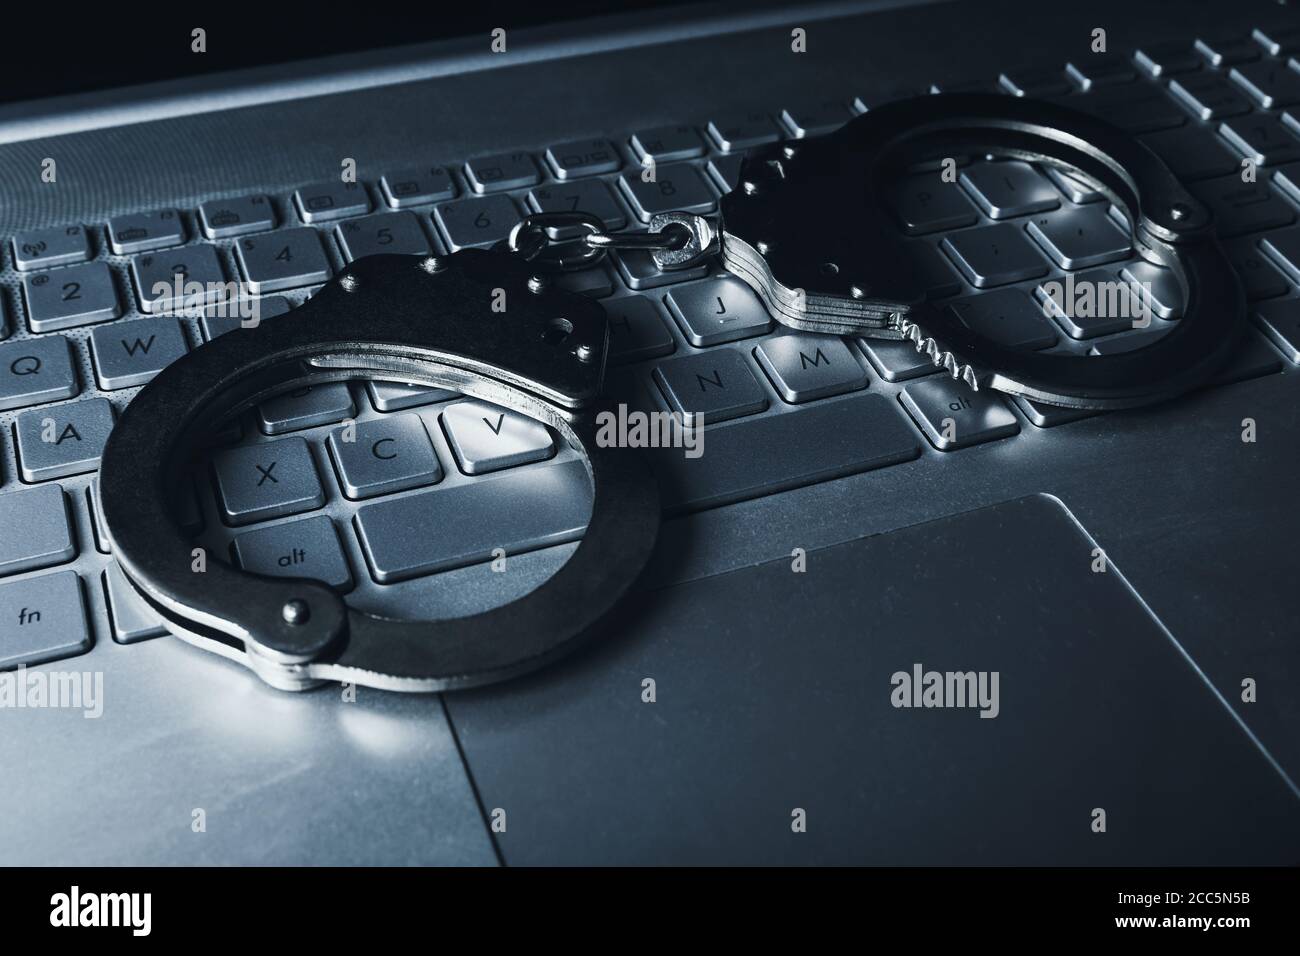 internet fraude concepto de delito cibernético - esposas en el portátil keybpord Foto de stock